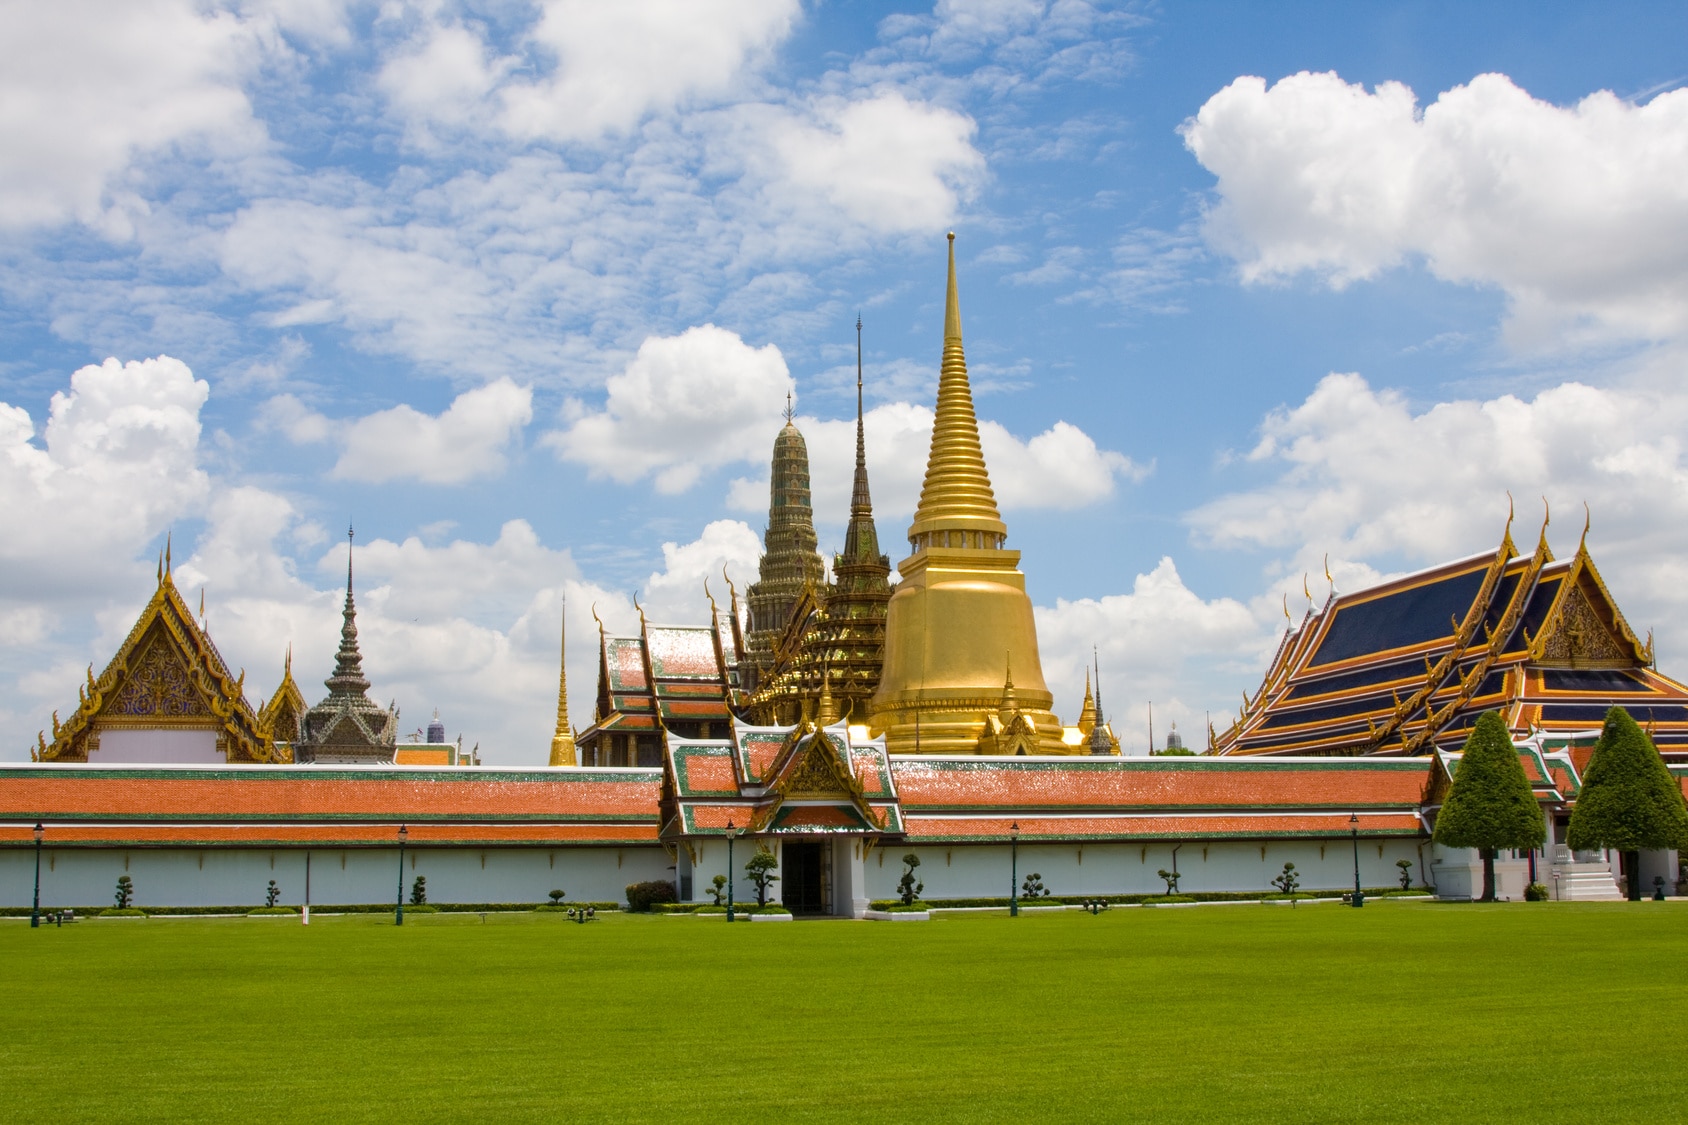 Gouden tempel "Grand Palace" tijdens een familiereis Thailand